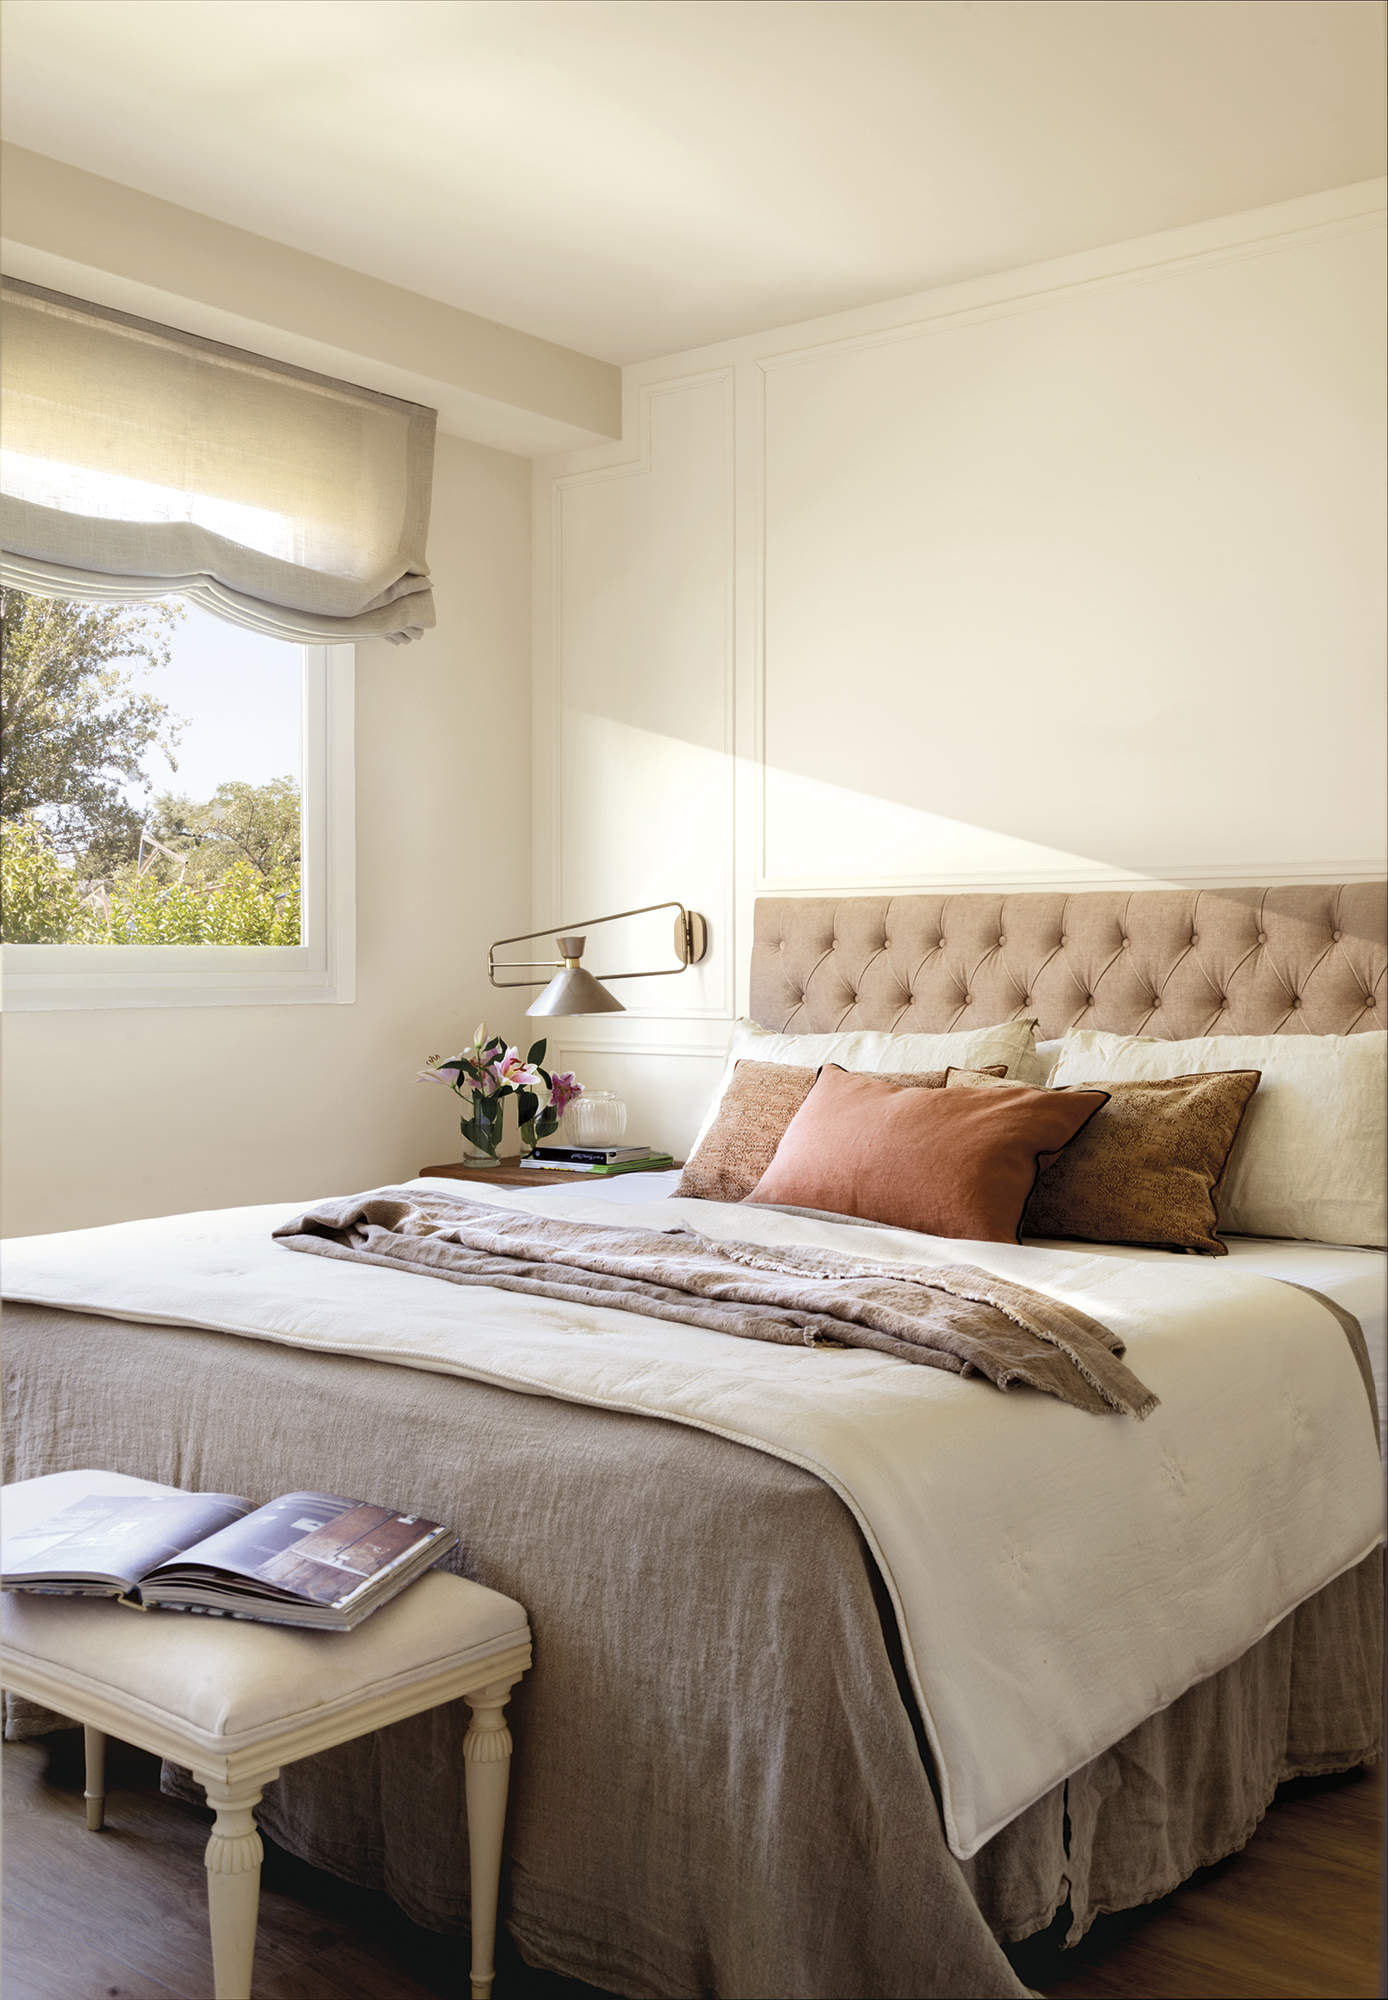 Dormitorio principal con cama con cabecero tapizado y aplique, estor gris, pared con molduras, banco estilo francés tapizado, ropa de cama gris, flores, suelo de madera.